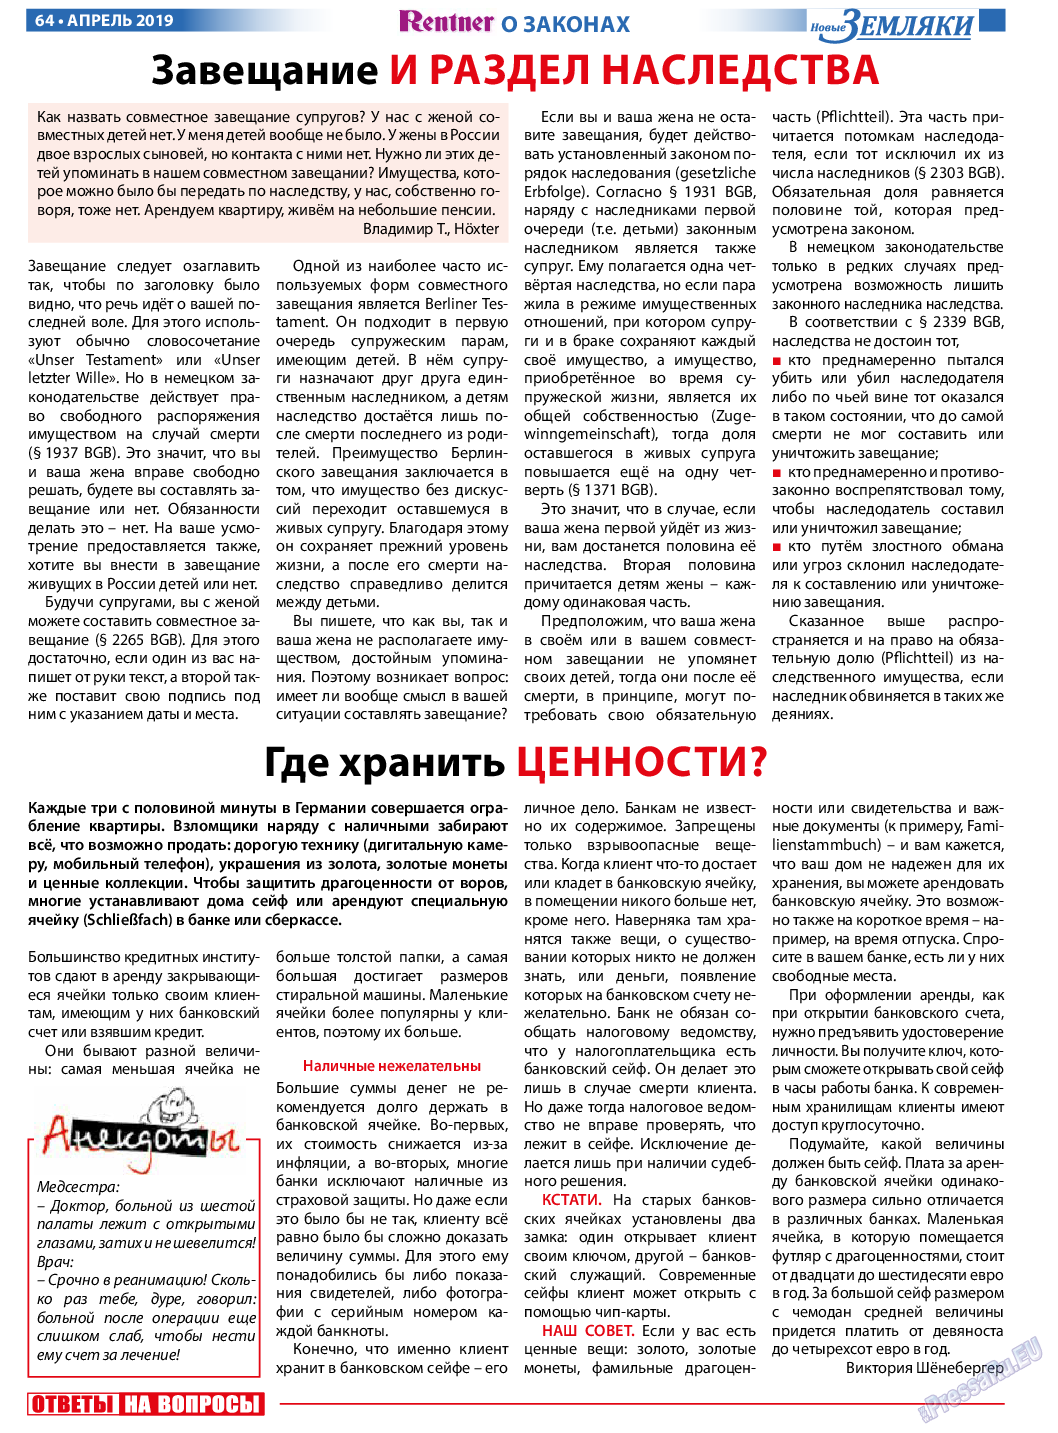 Новые Земляки, газета. 2019 №4 стр.64